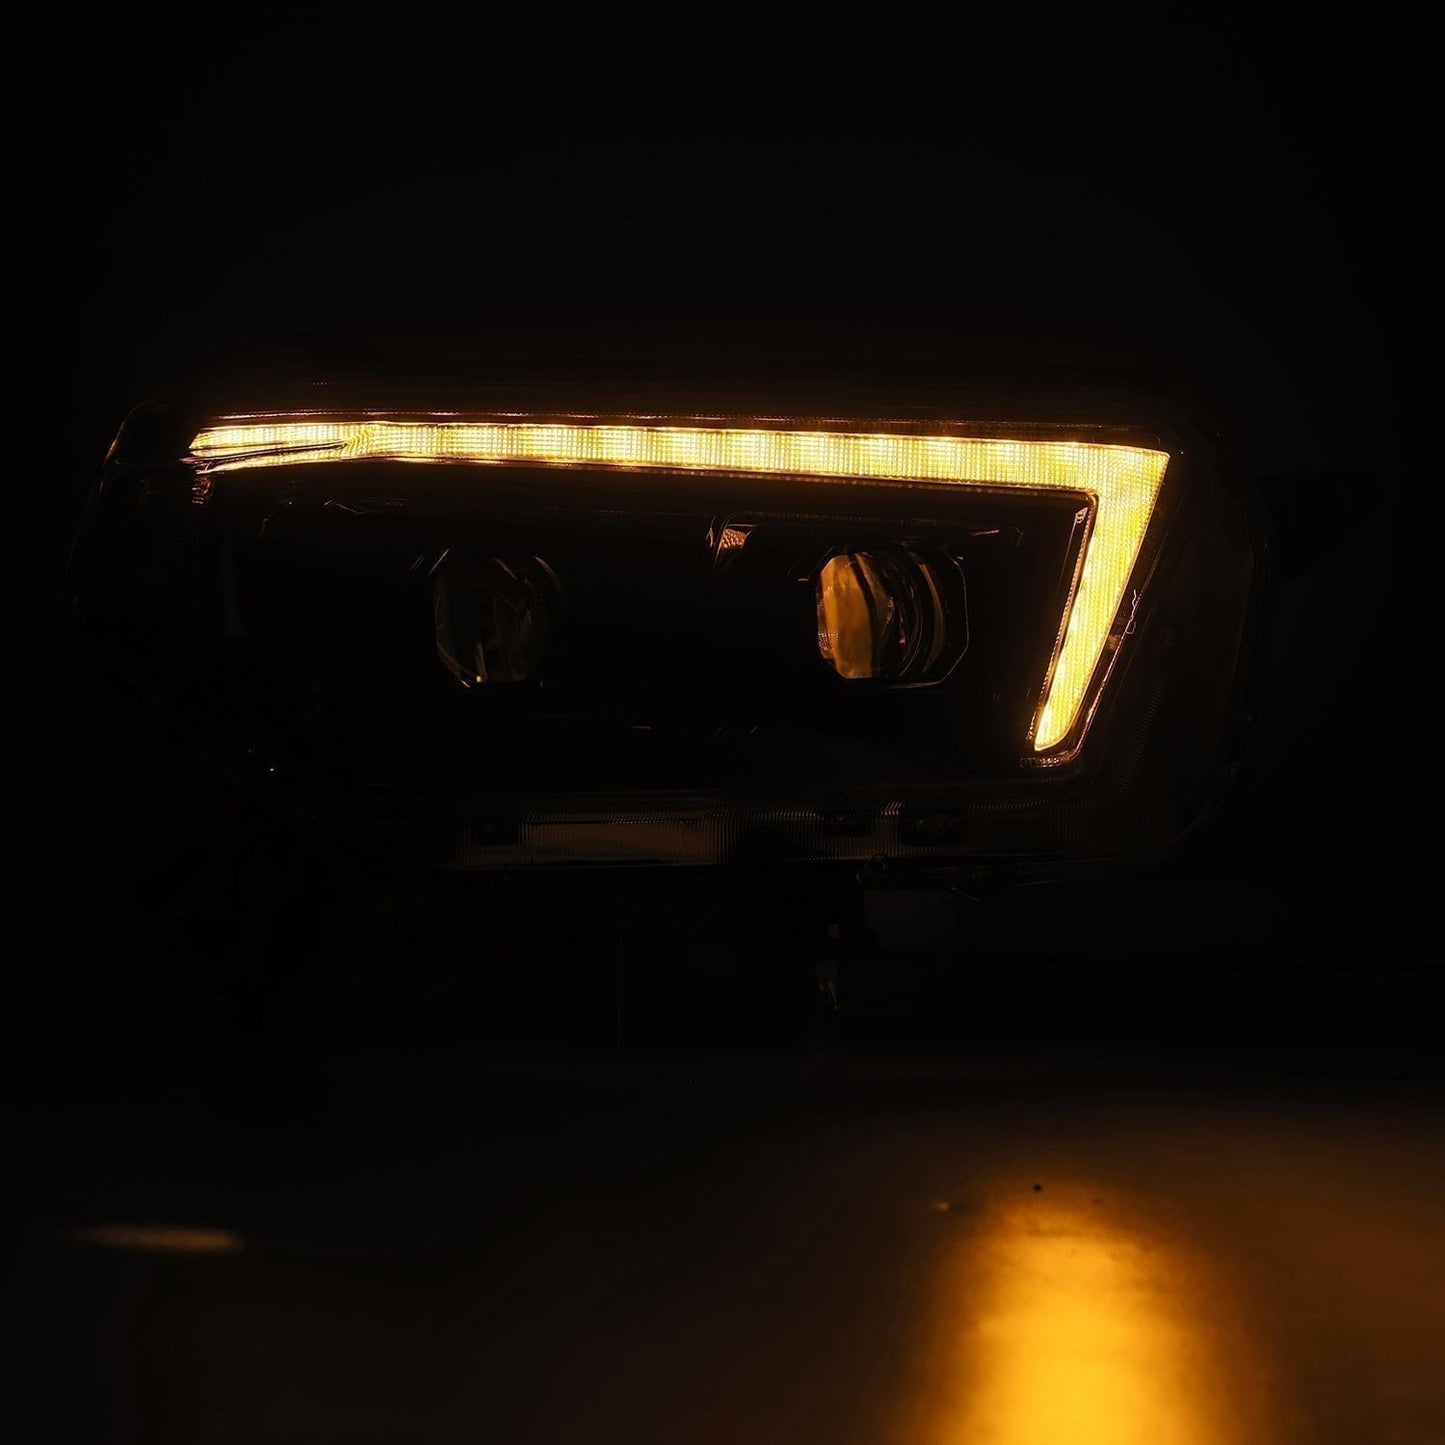 AlphaRex Luxx Headlights | '10 - '13 4Runner